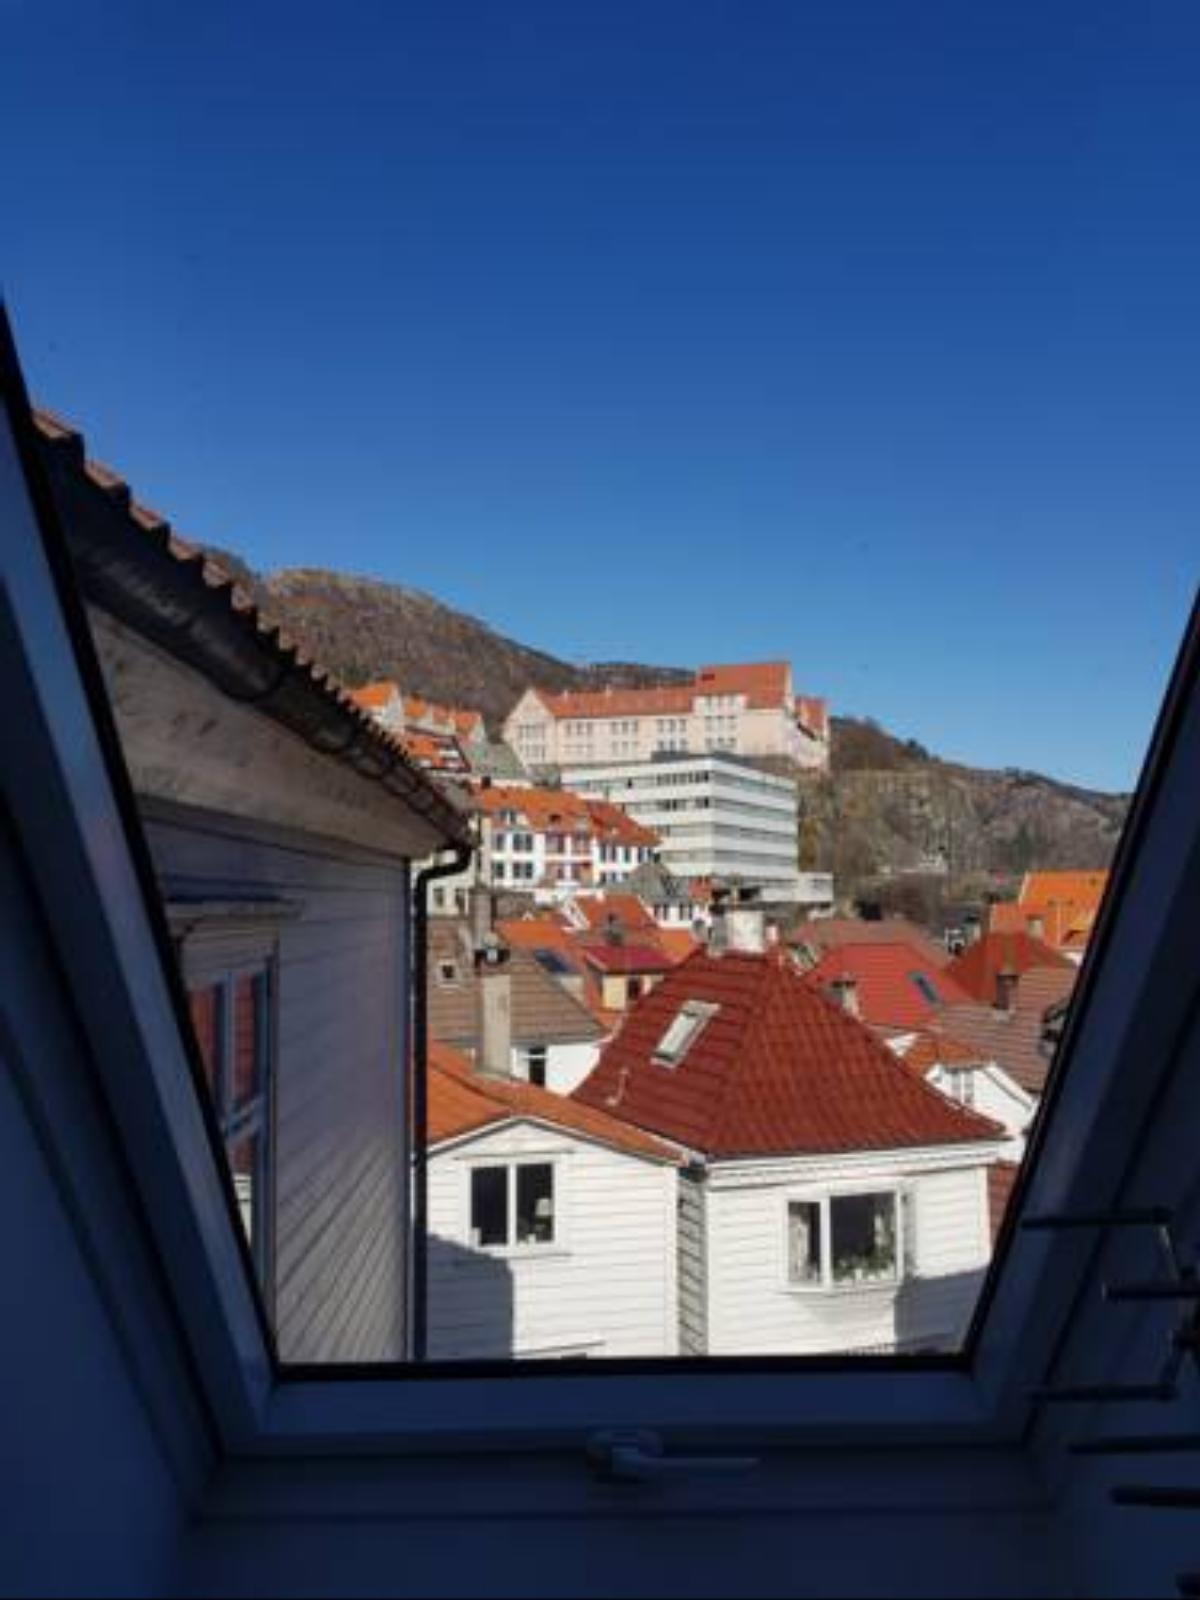 Skuteviken Apartments 40 Hotel Bergen Norway